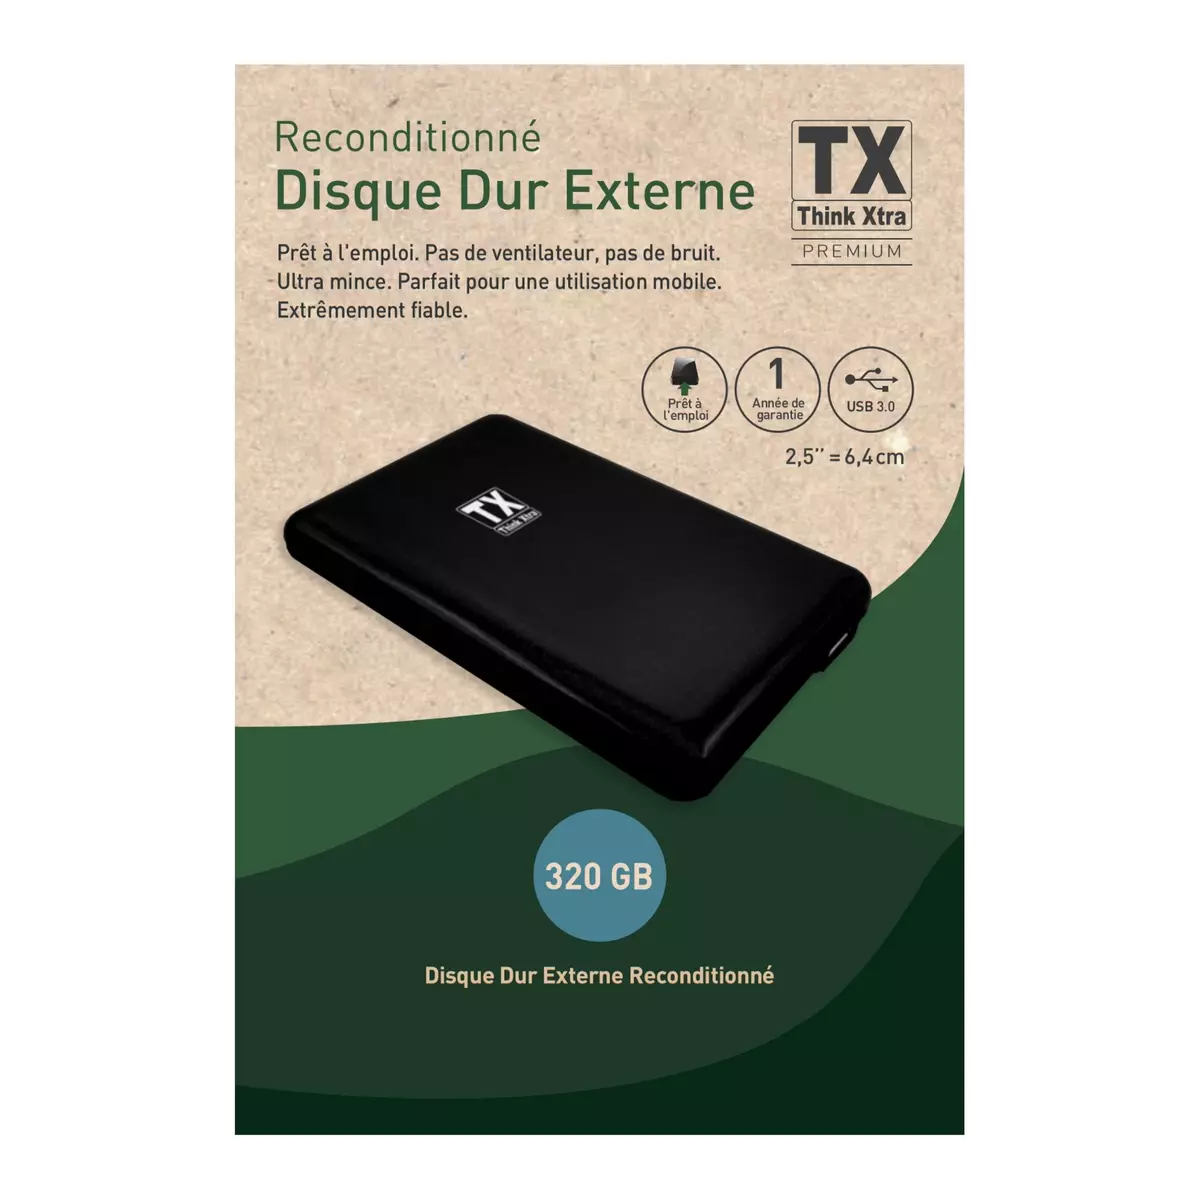 TX Disque dur externe reconditionné 320 GO USB 3.0 - Noir pas cher